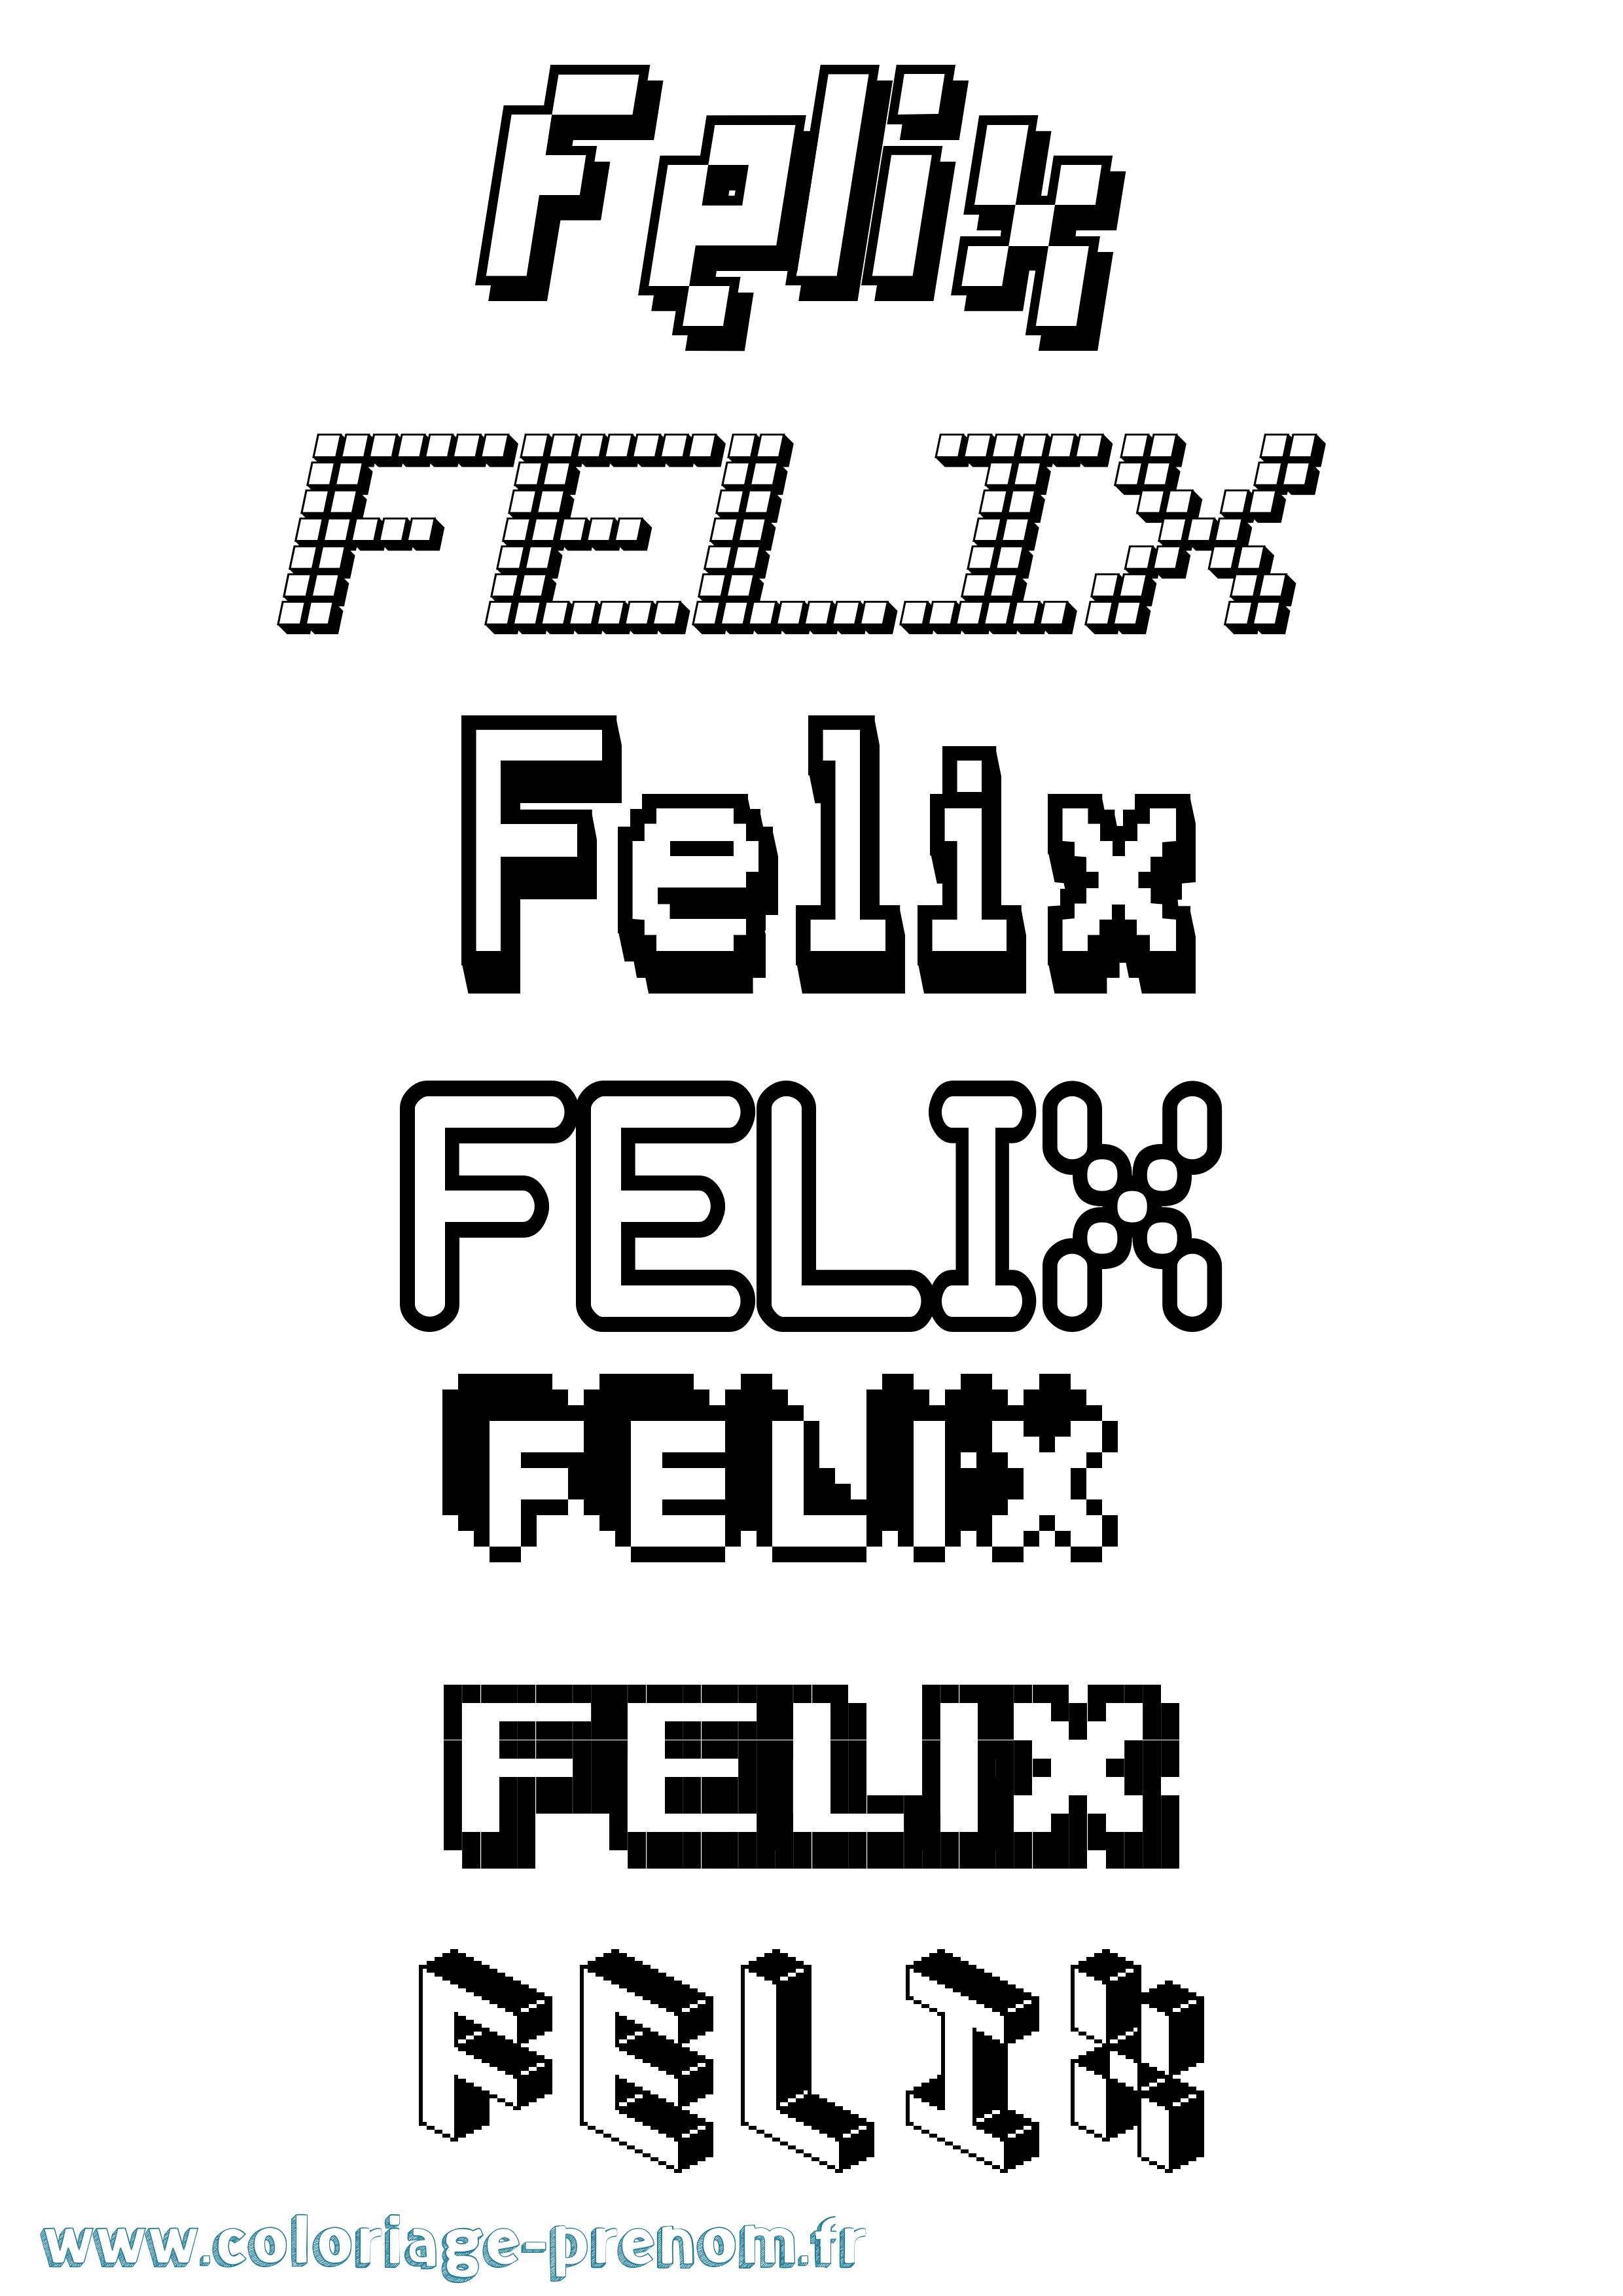 Coloriage prénom Felix Pixel